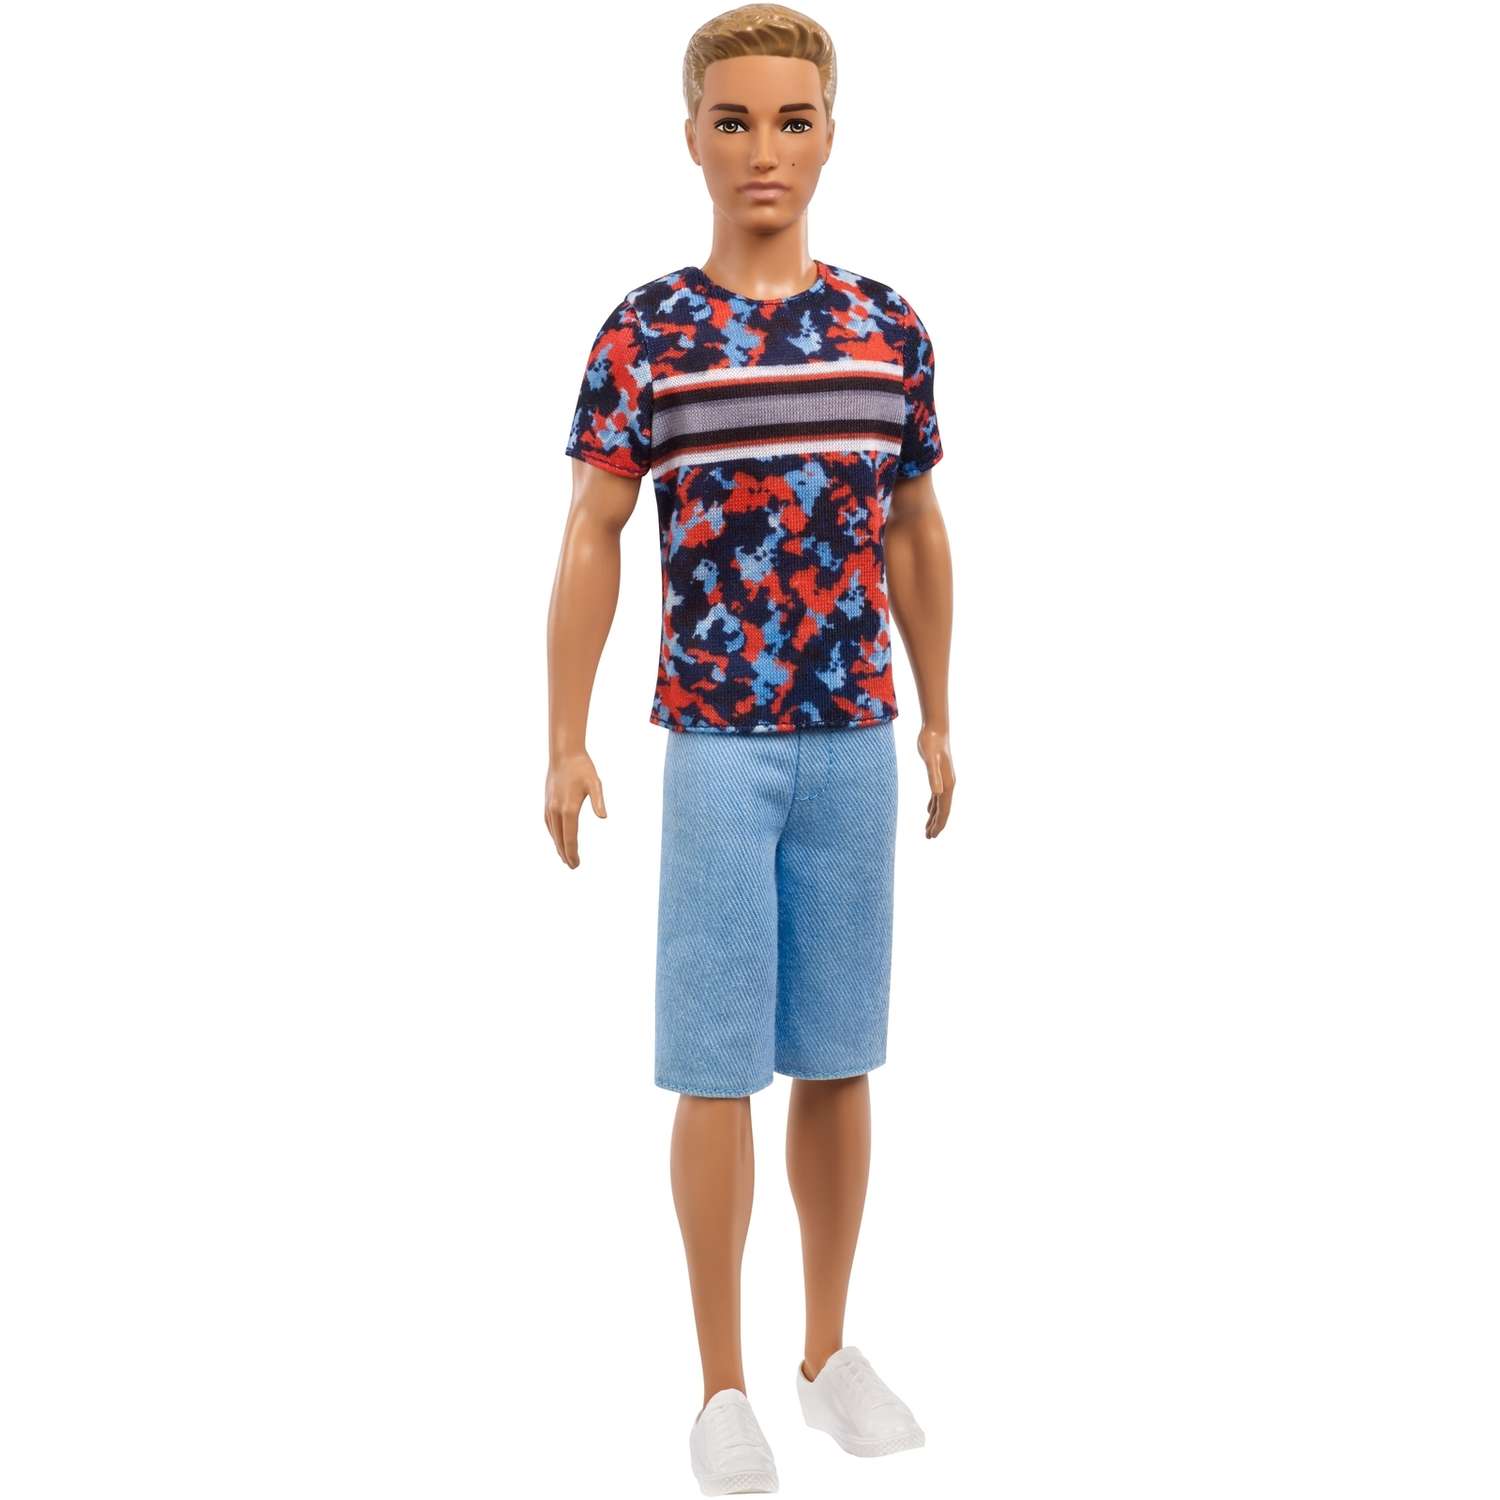 Кукла Barbie Игра с модой Кен 118 В футболке с суперпринтом FXL65 DWK44 - фото 1